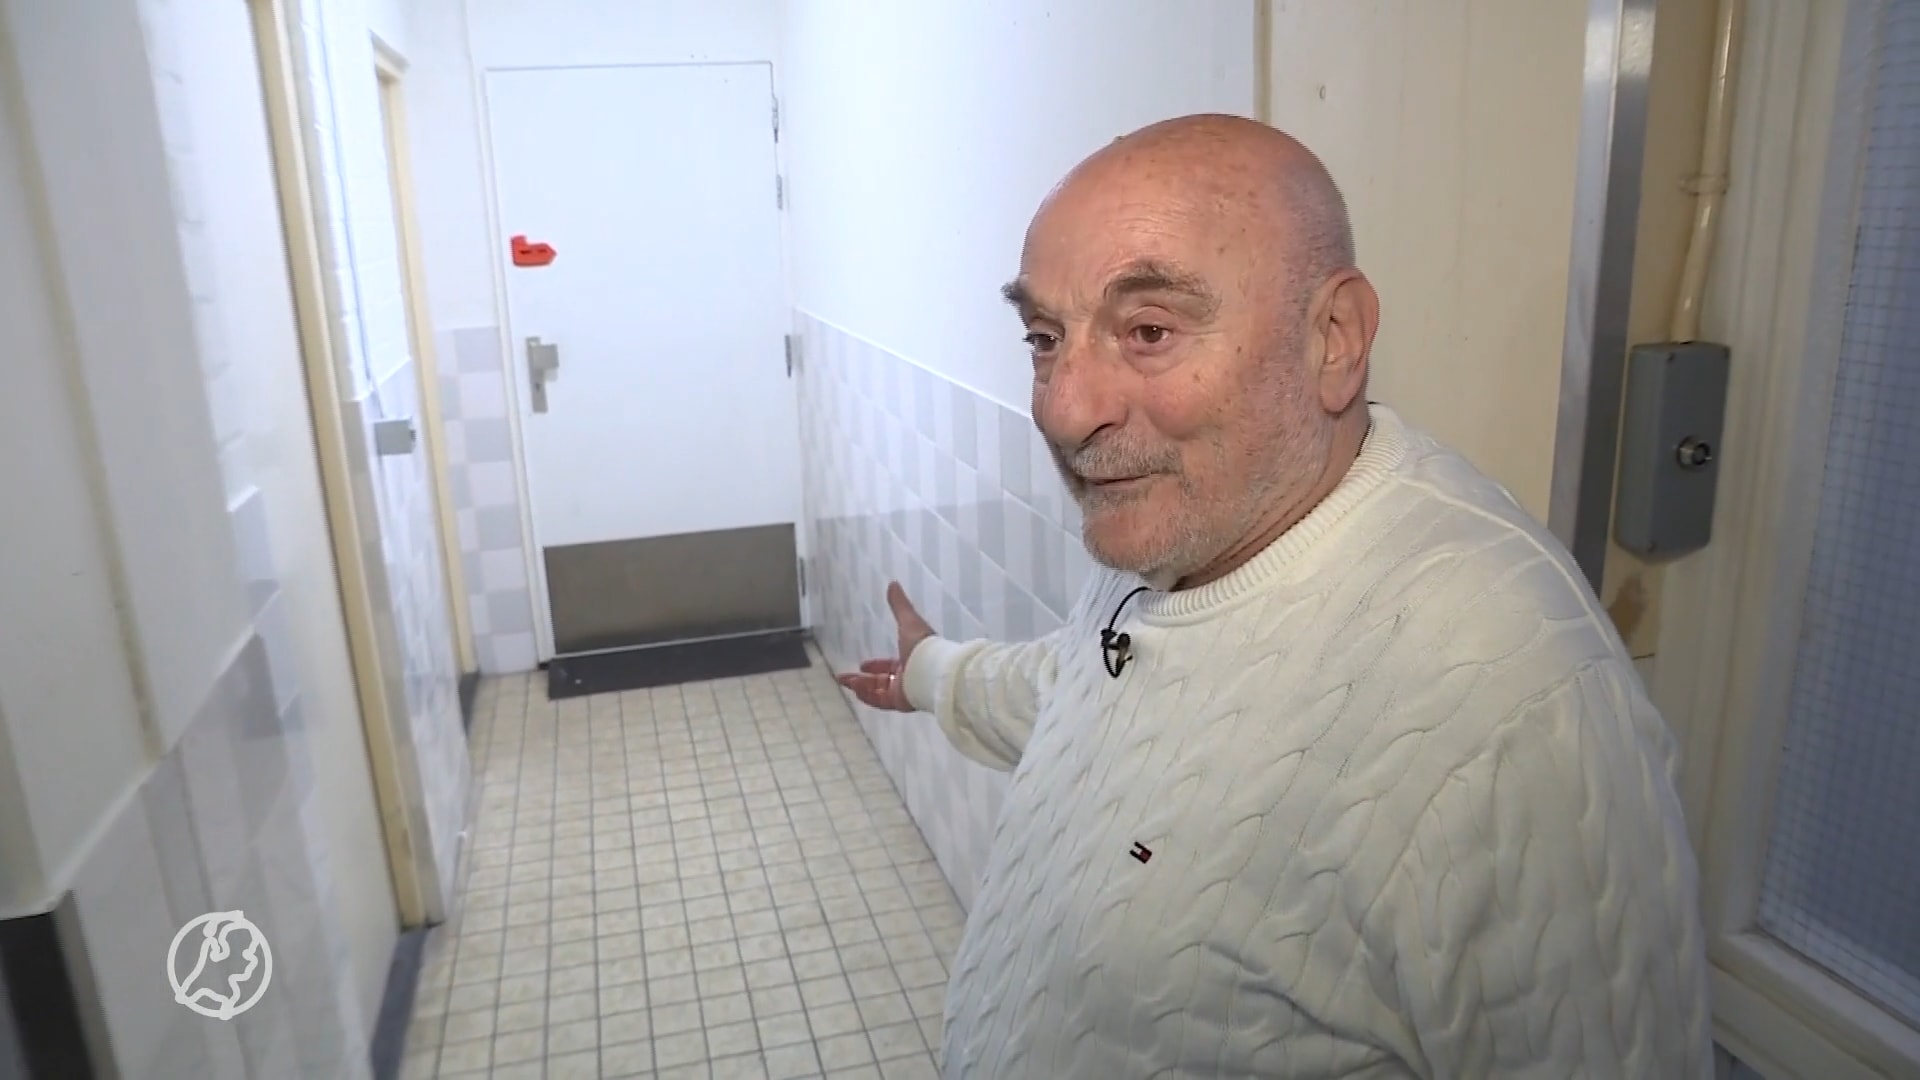 Bewoners in Haagse seniorenflats willen meer camera's vanwege veiligheid